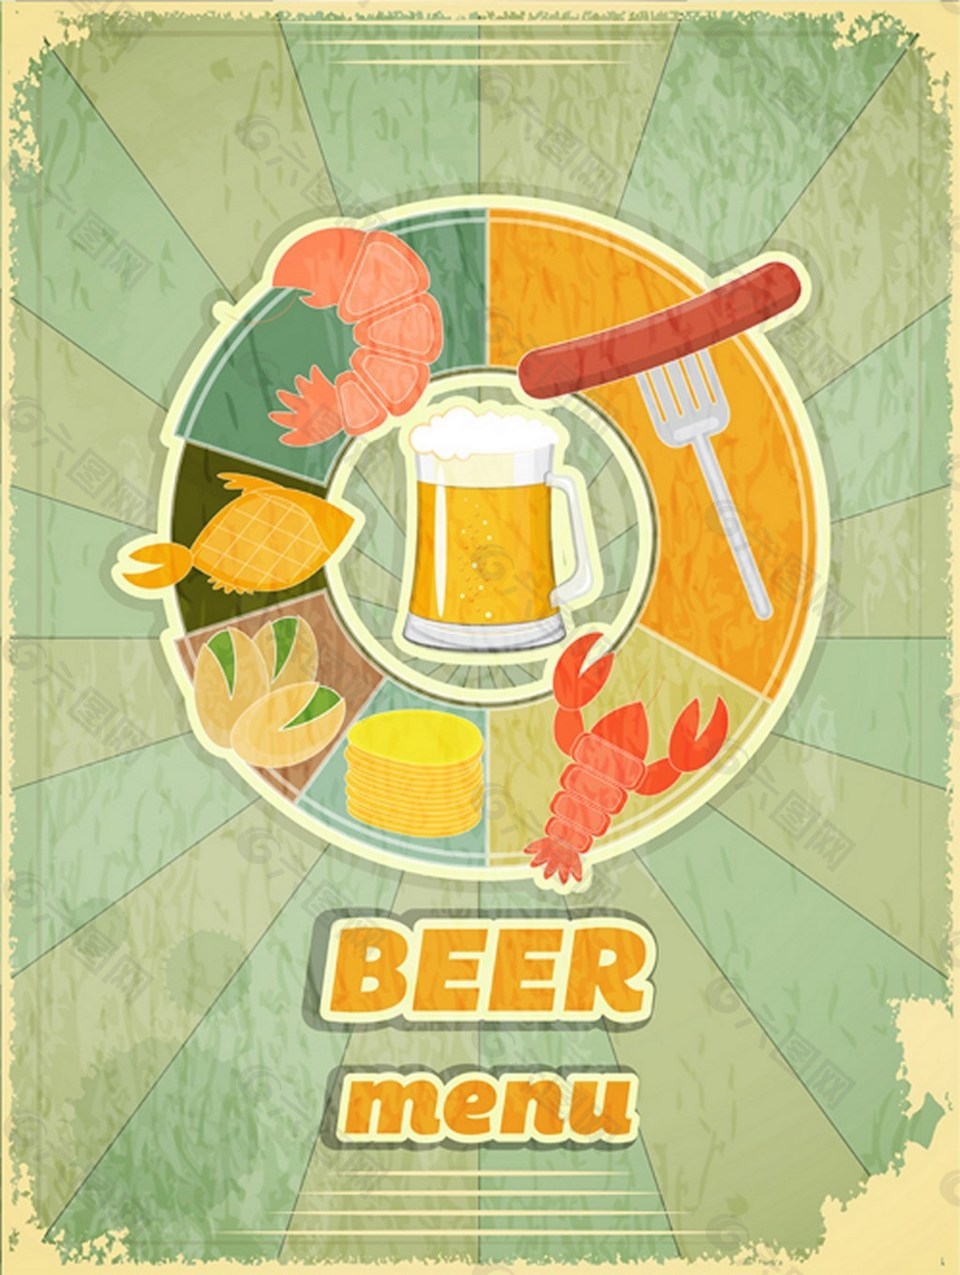 啤酒与美食复古海报材料